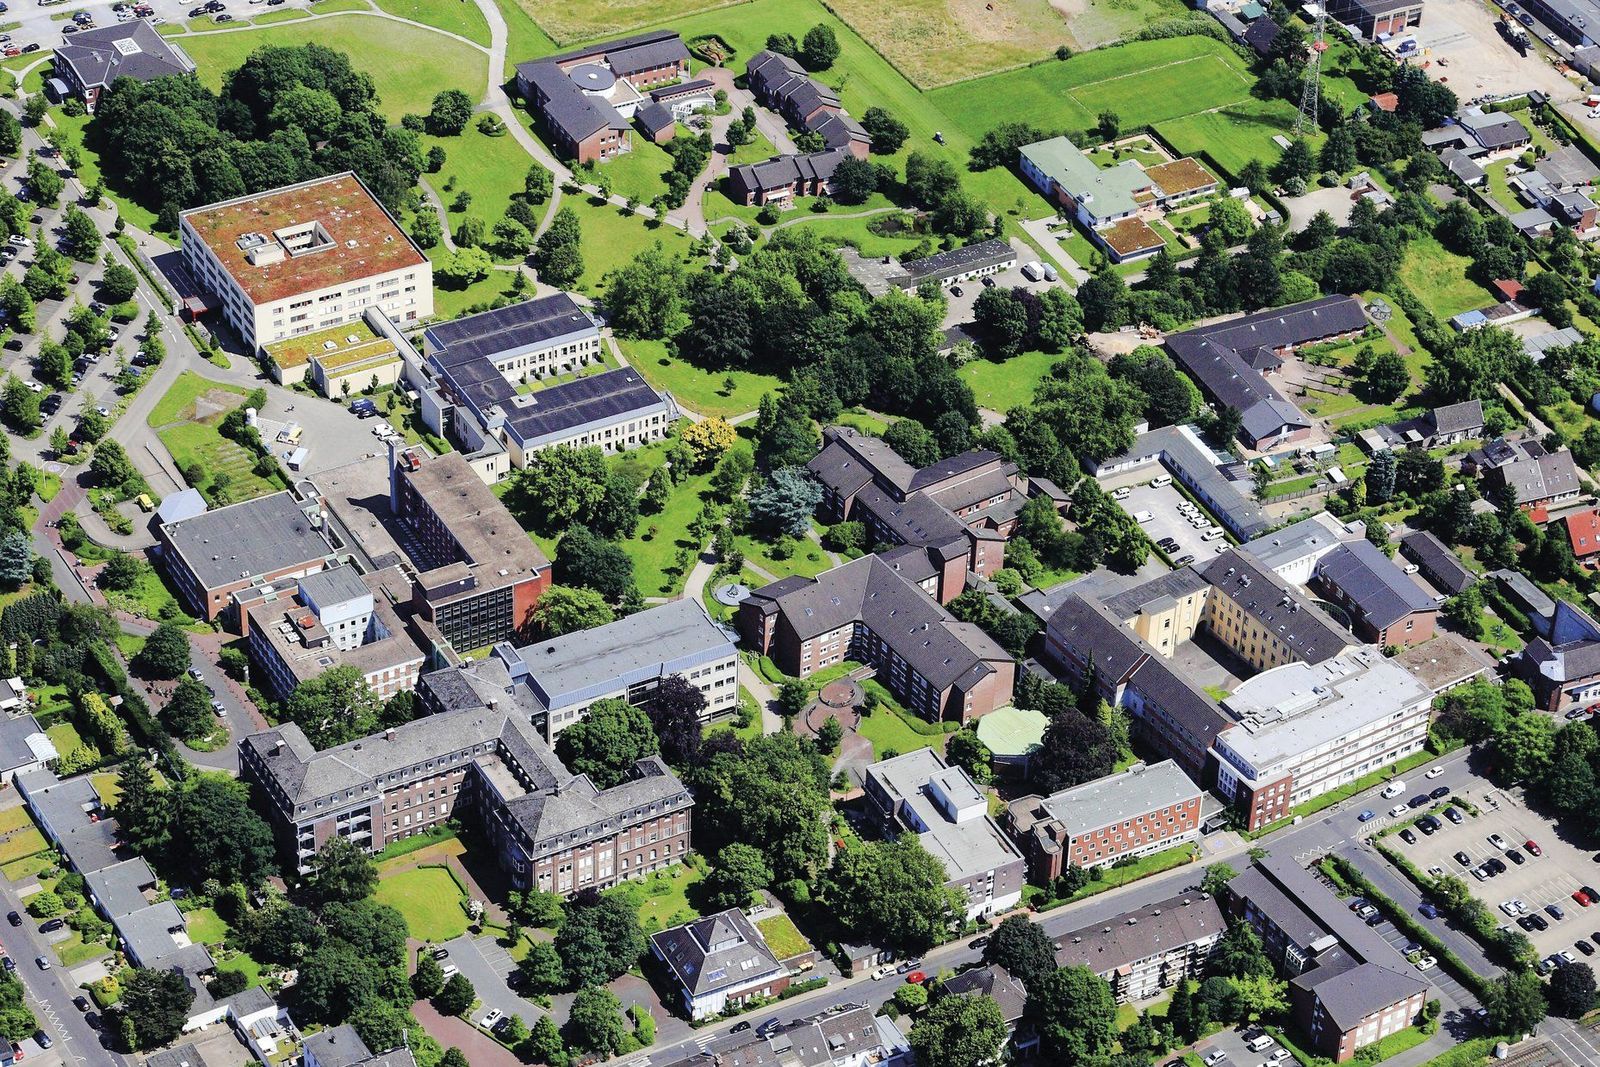 Die Alexianer in Krefeld von oben: Ein Luftbild zeigt die Gebäude und den Alexianer-Park von oben